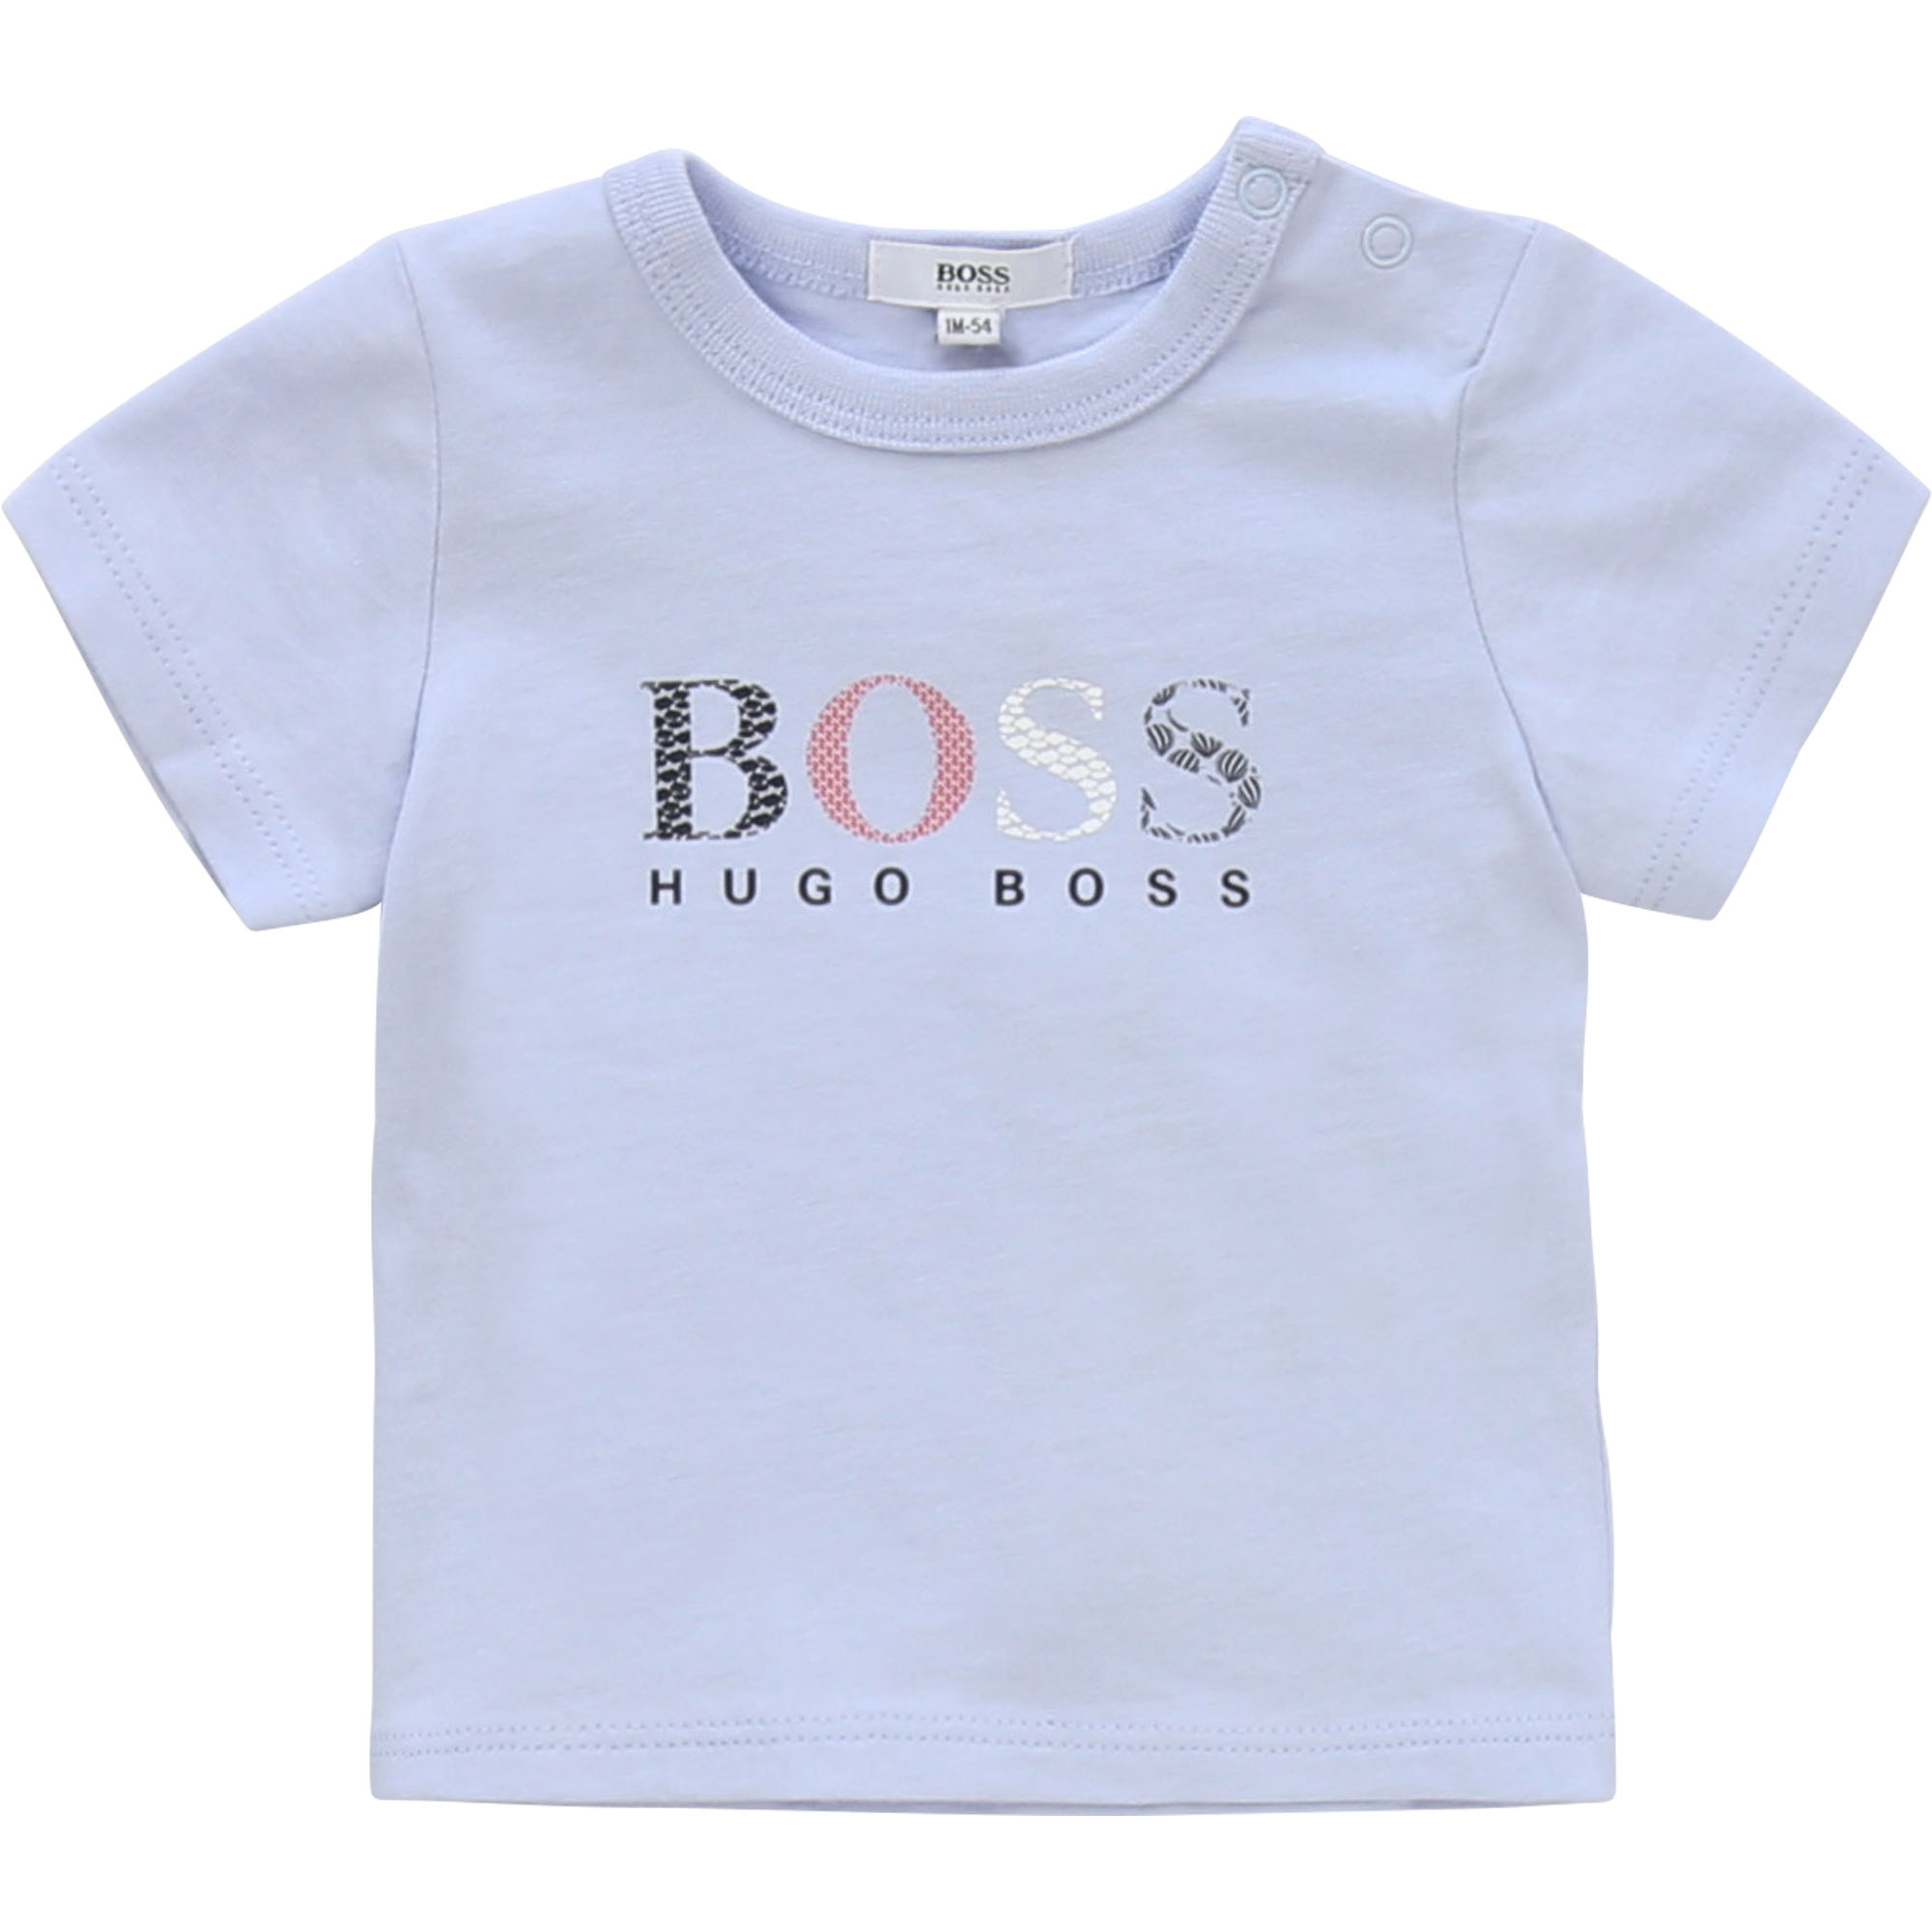 hugo boss baby top